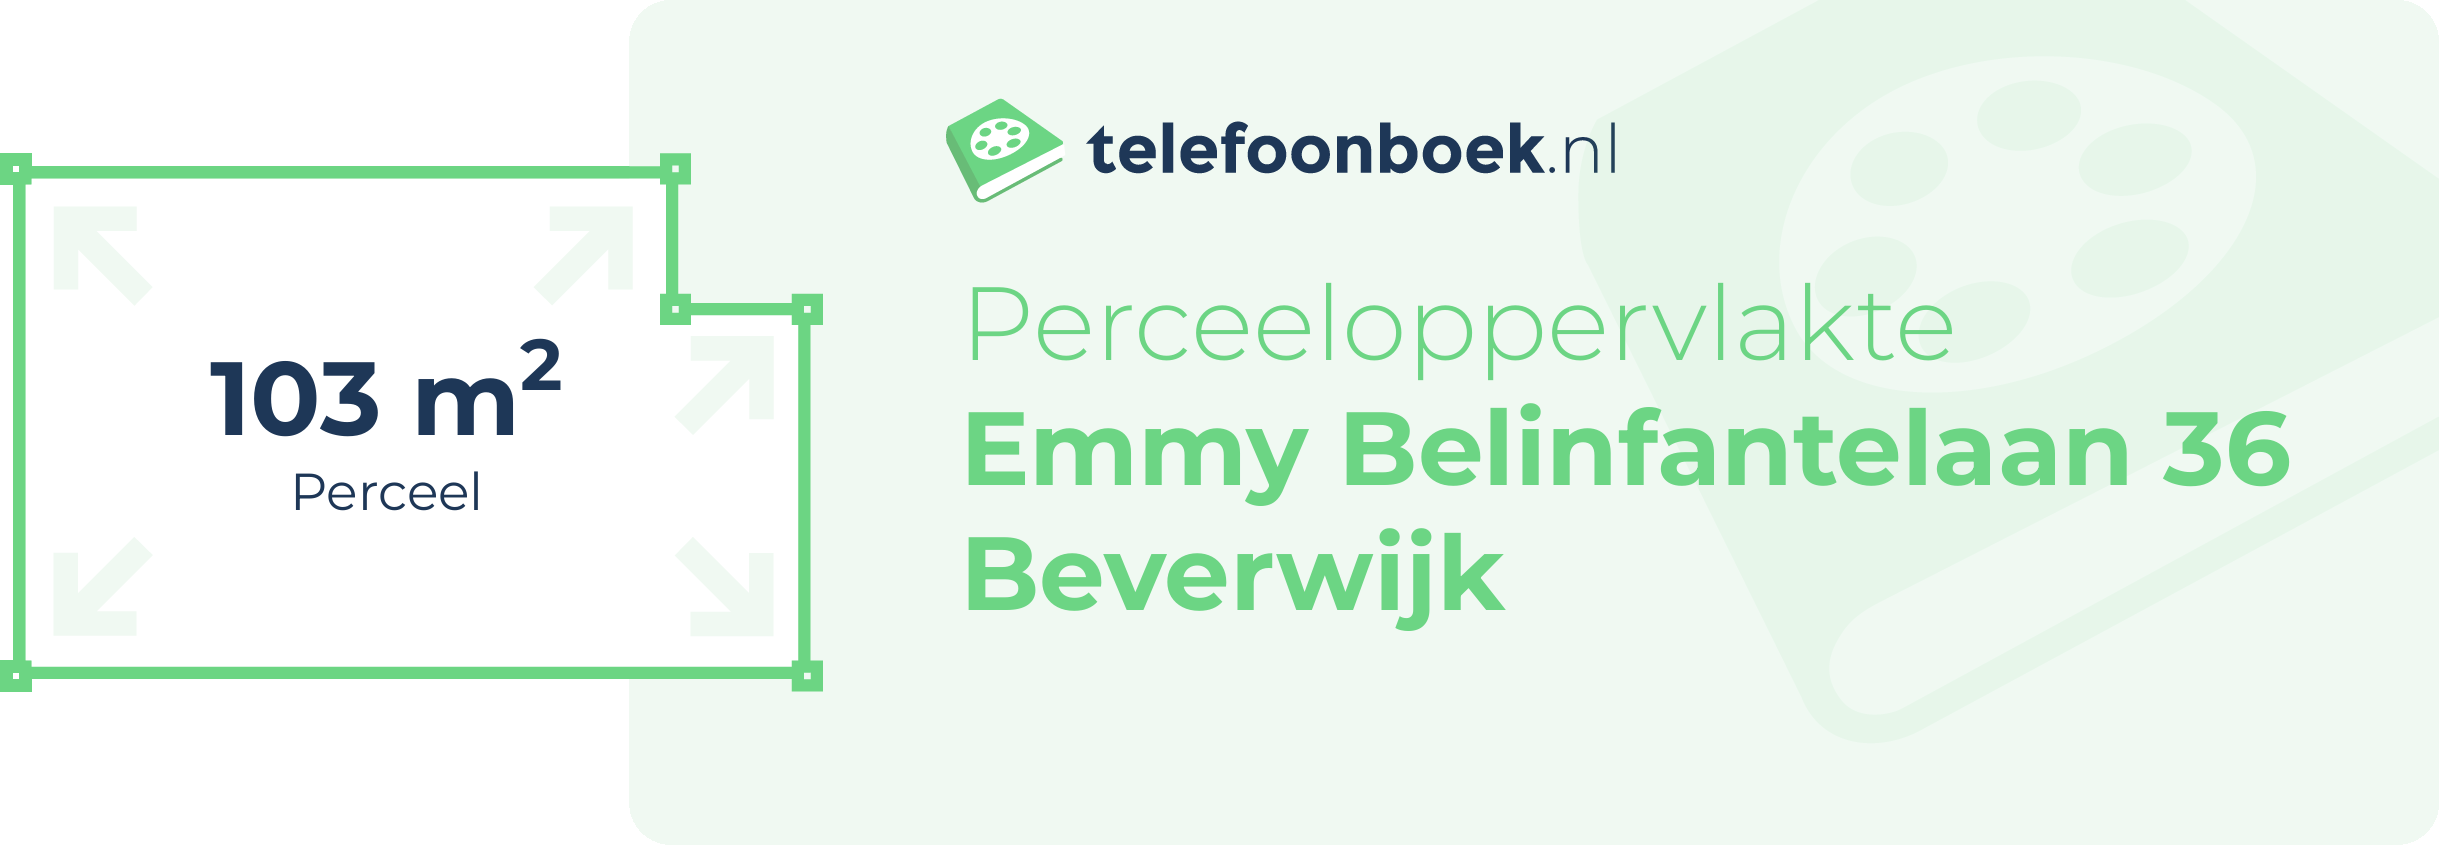 Perceeloppervlakte Emmy Belinfantelaan 36 Beverwijk